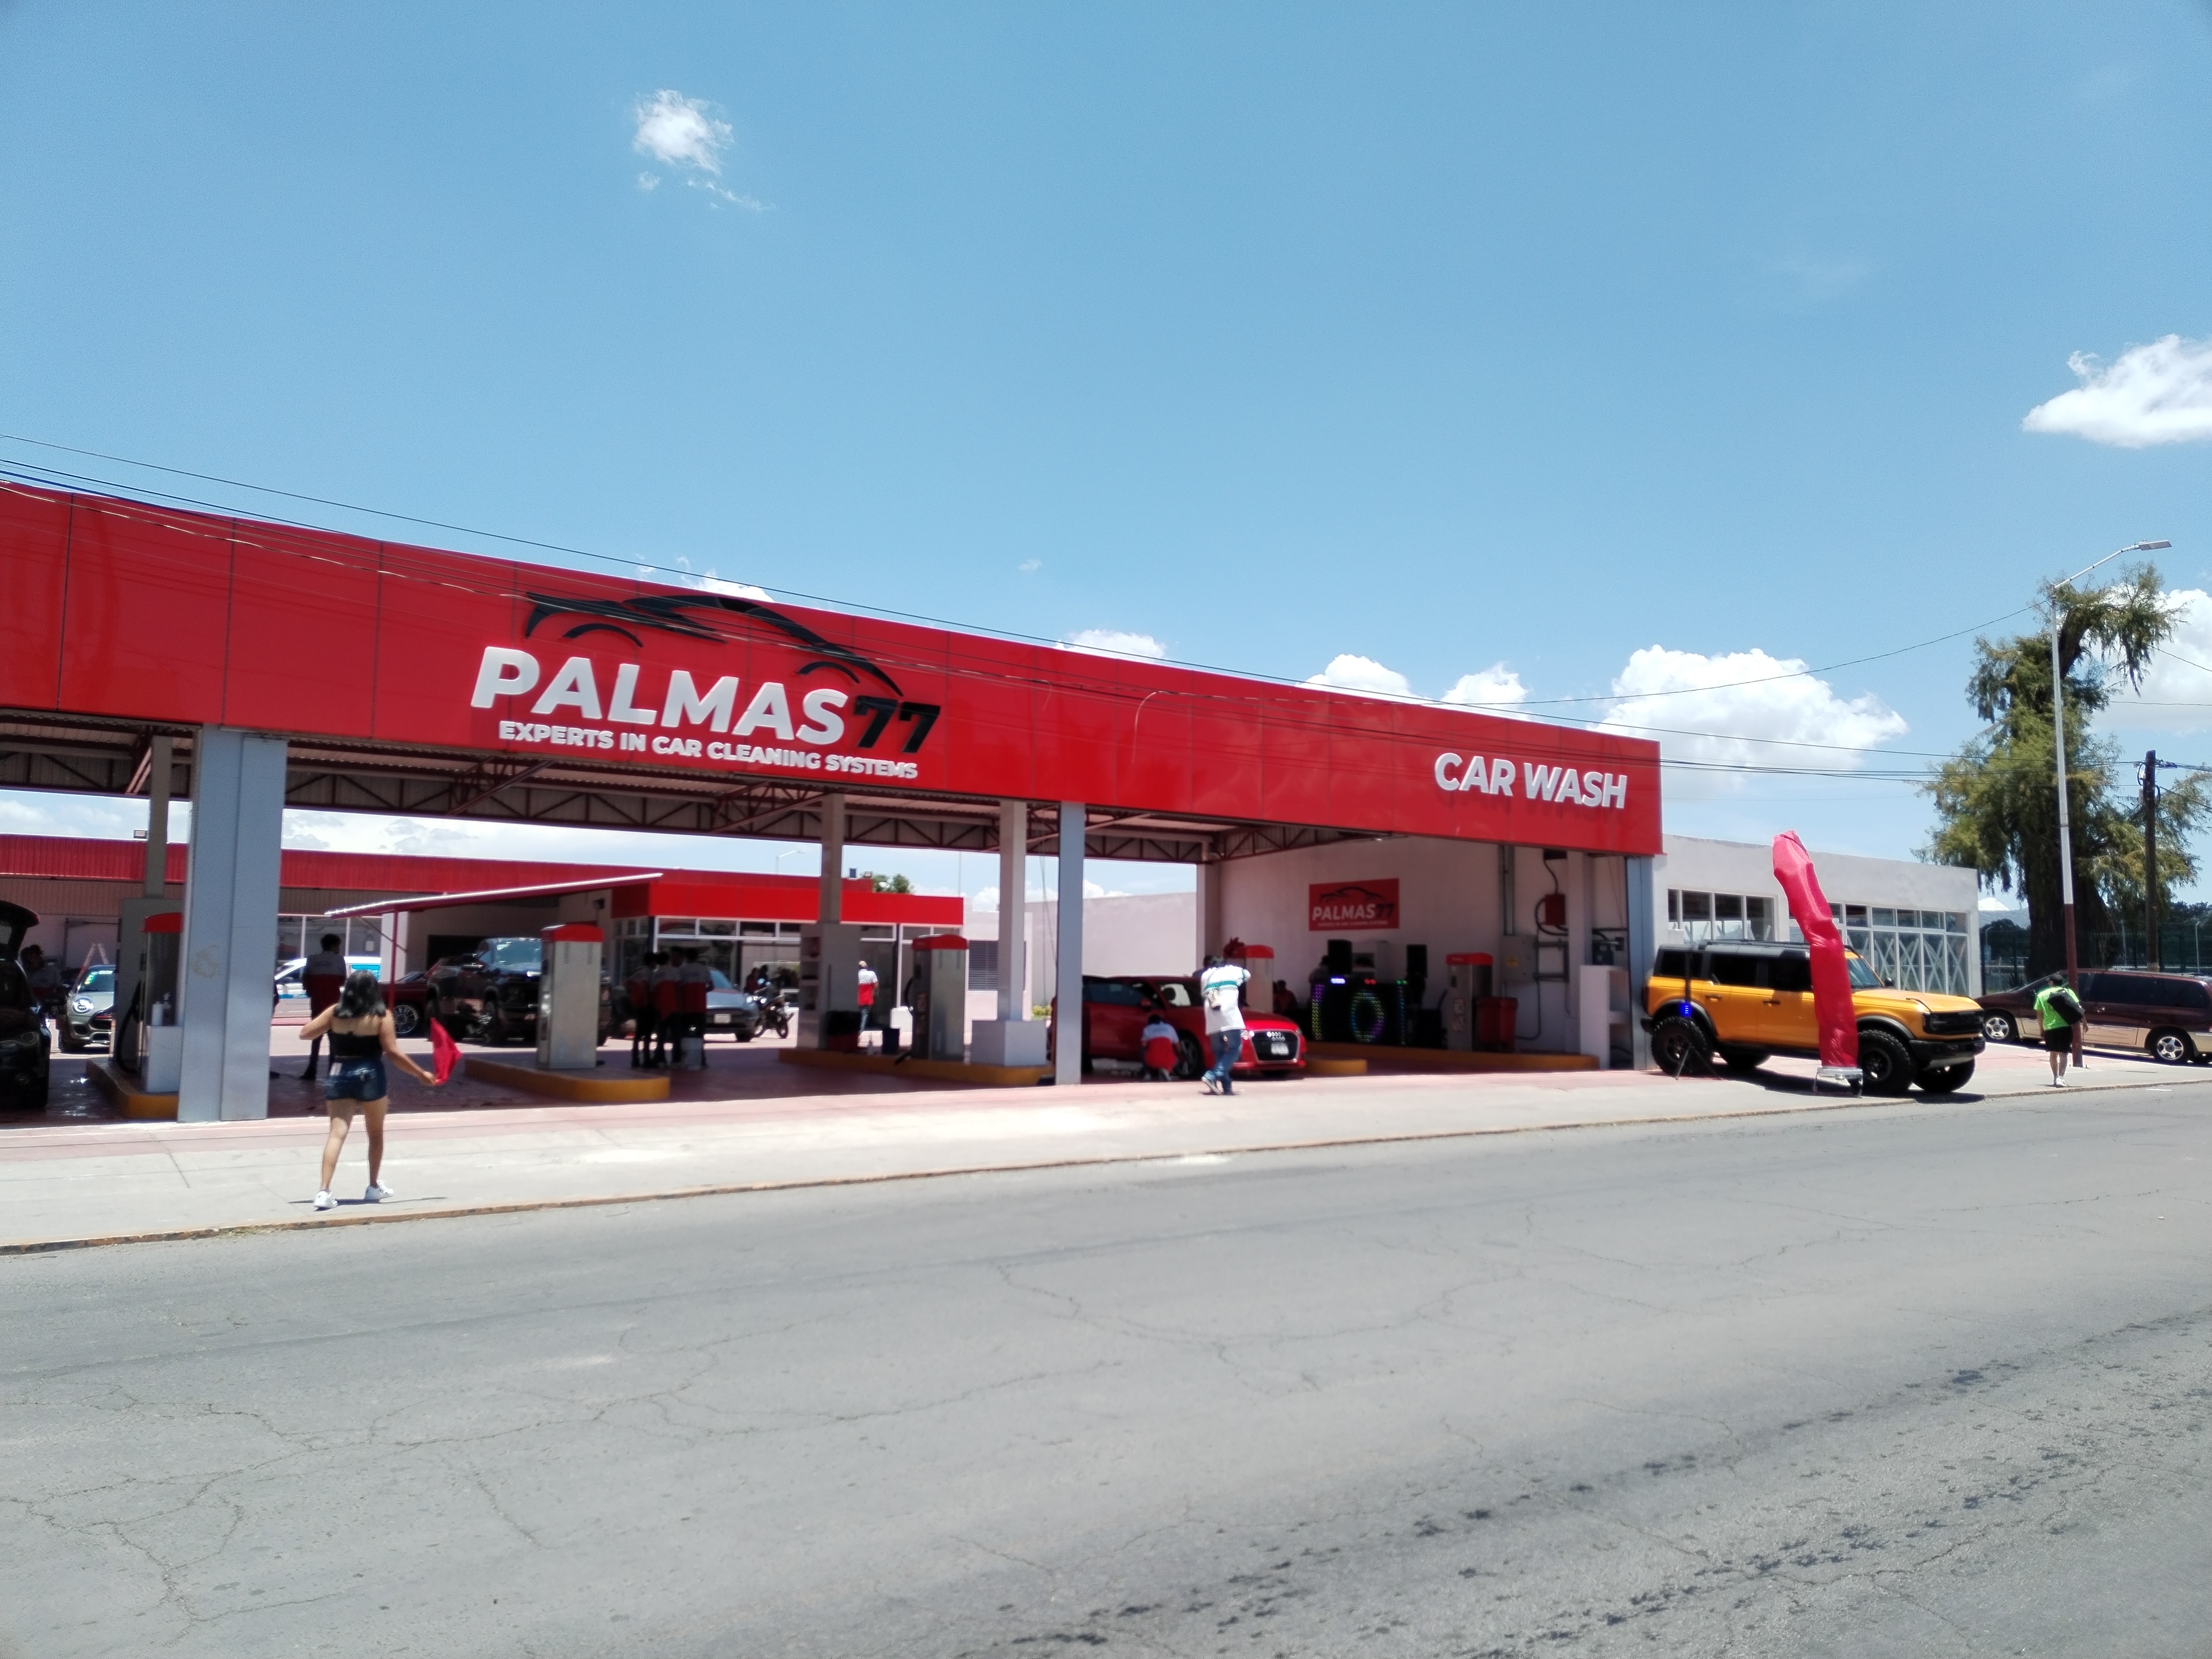 Palmas 77 Car Wash abre sus puertas como el mejor autolavado de Texcoco, MX.